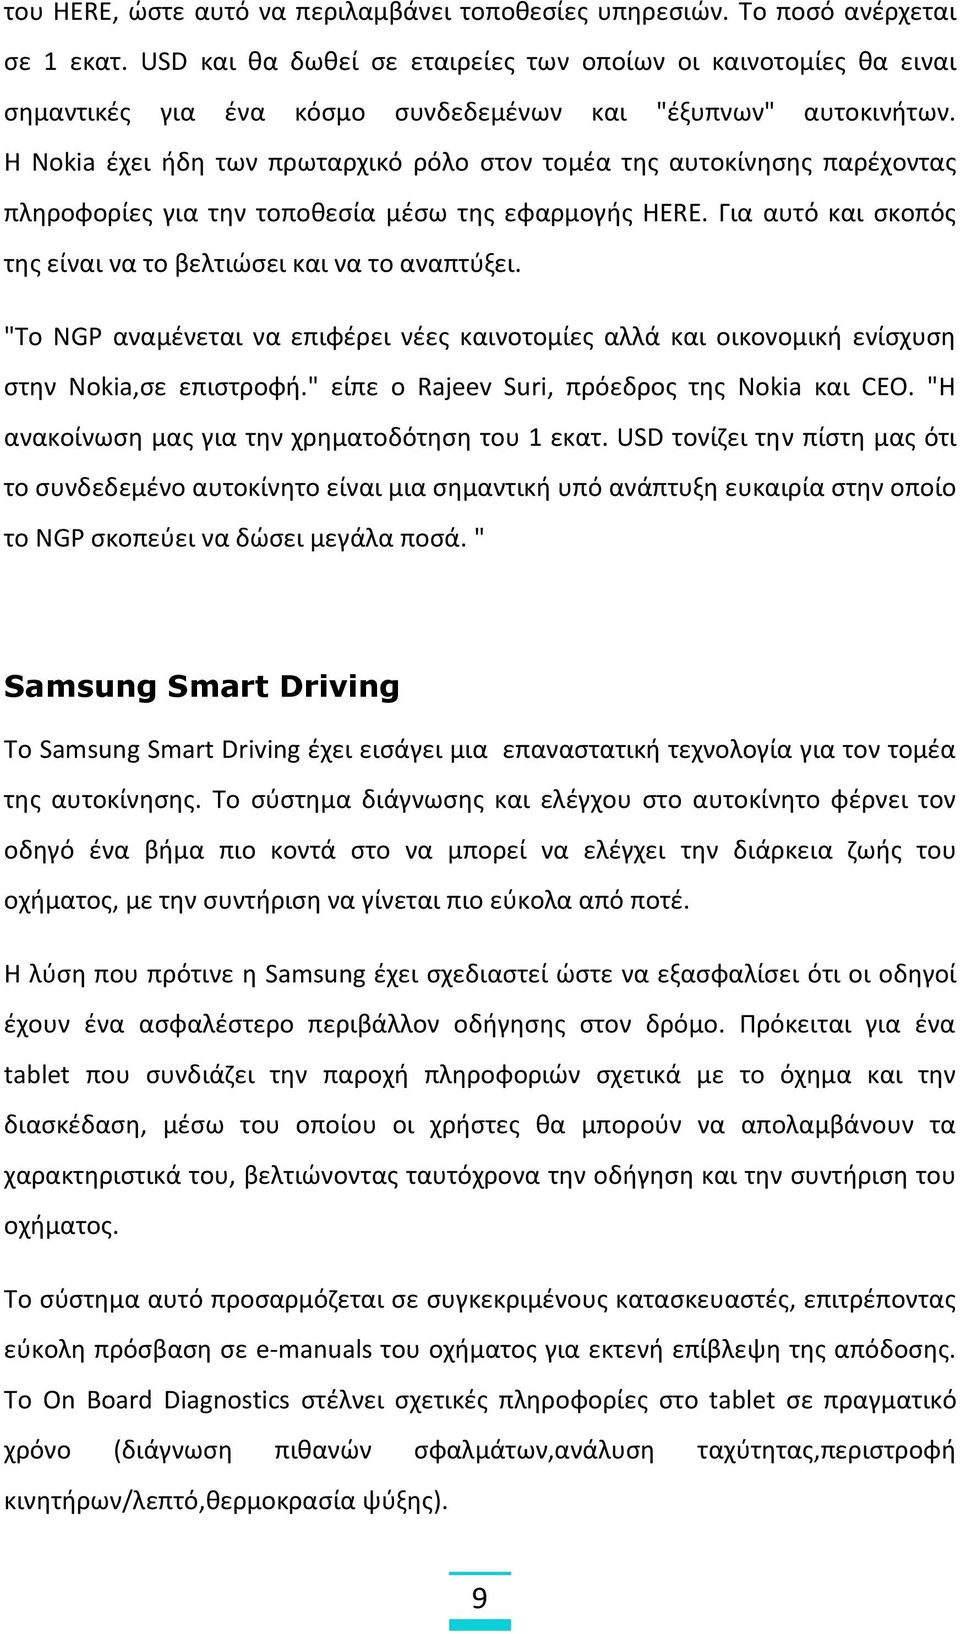 Η Nokia έχει ήδη των πρωταρχικό ρόλο στον τομέα της αυτοκίνησης παρέχοντας πληροφορίες για την τοποθεσία μέσω της εφαρμογής HERE. Για αυτό και σκοπός της είναι να το βελτιώσει και να το αναπτύξει.